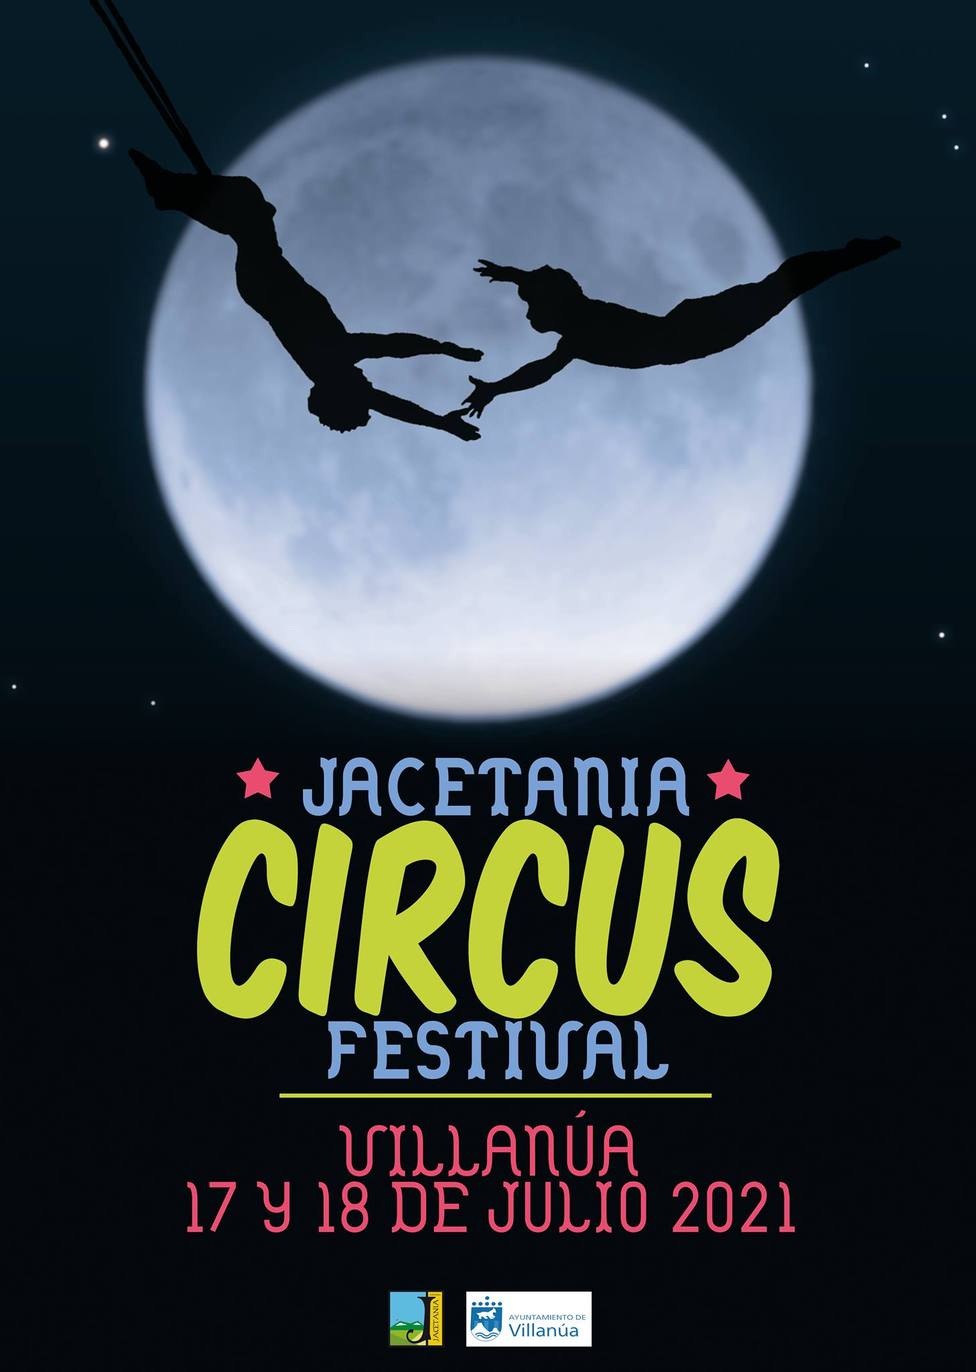 Vuelve el circo a Villanúa este fin de semana